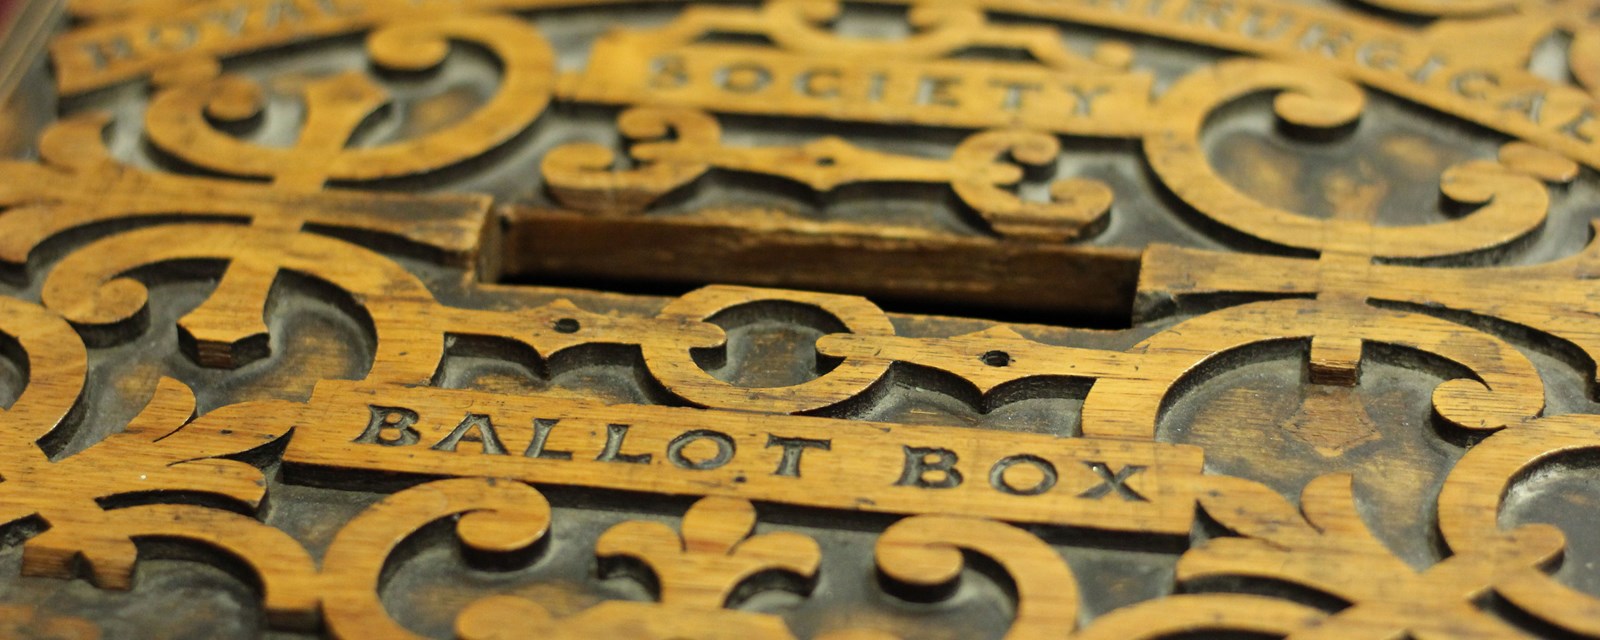 Library ballot box